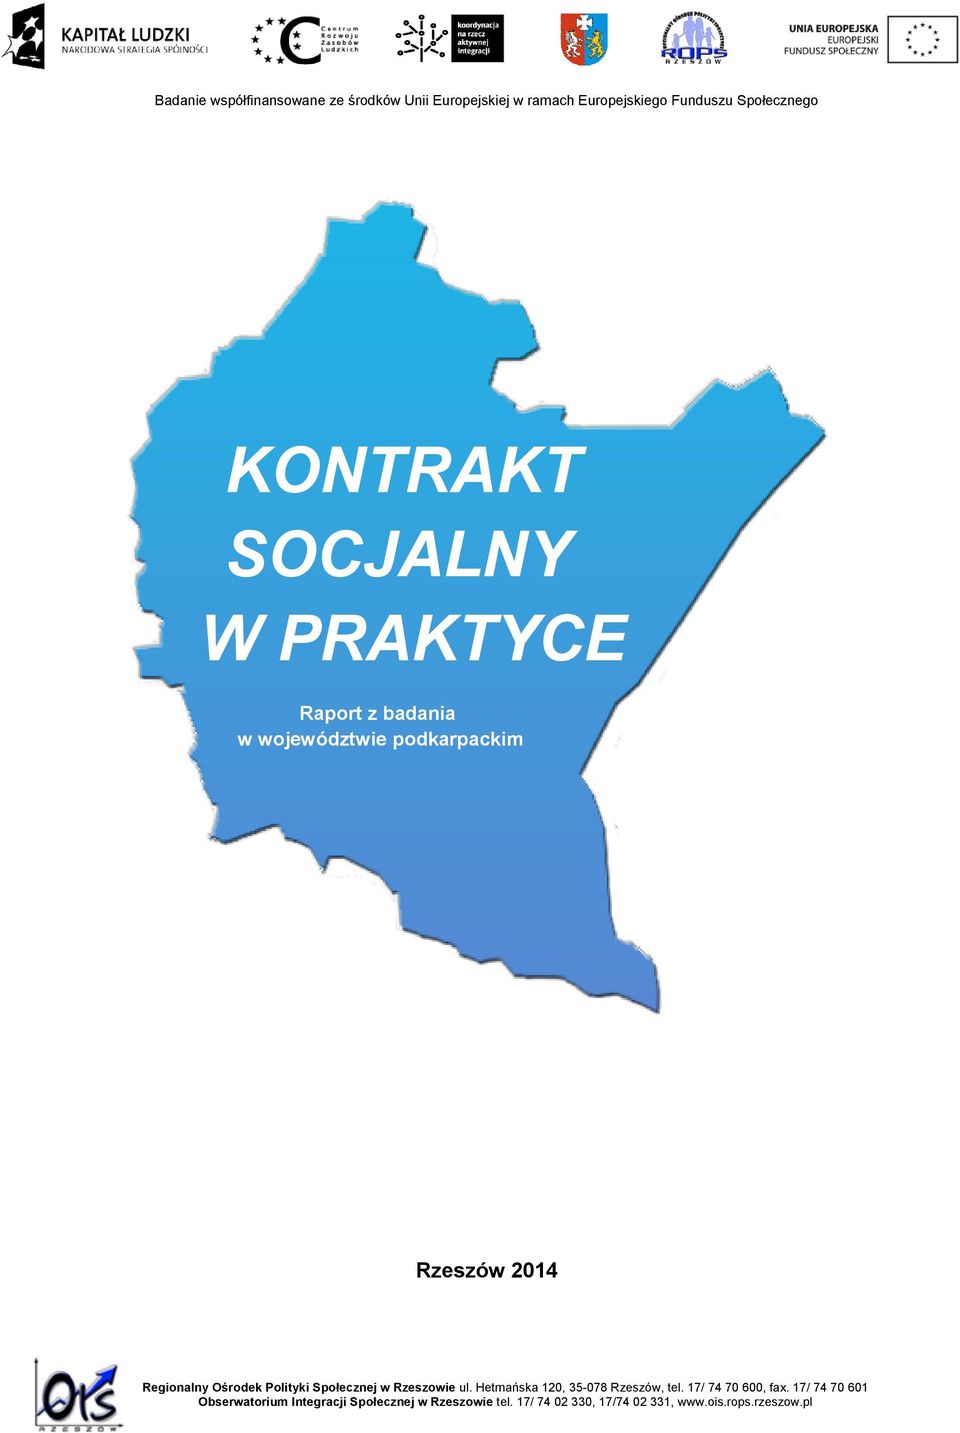 Ośrodek Polityki Społecznej w Rzeszowie ul. Hetmańska 120, 35-078 Rzeszów, tel. 17/ 74 70 600, fax.